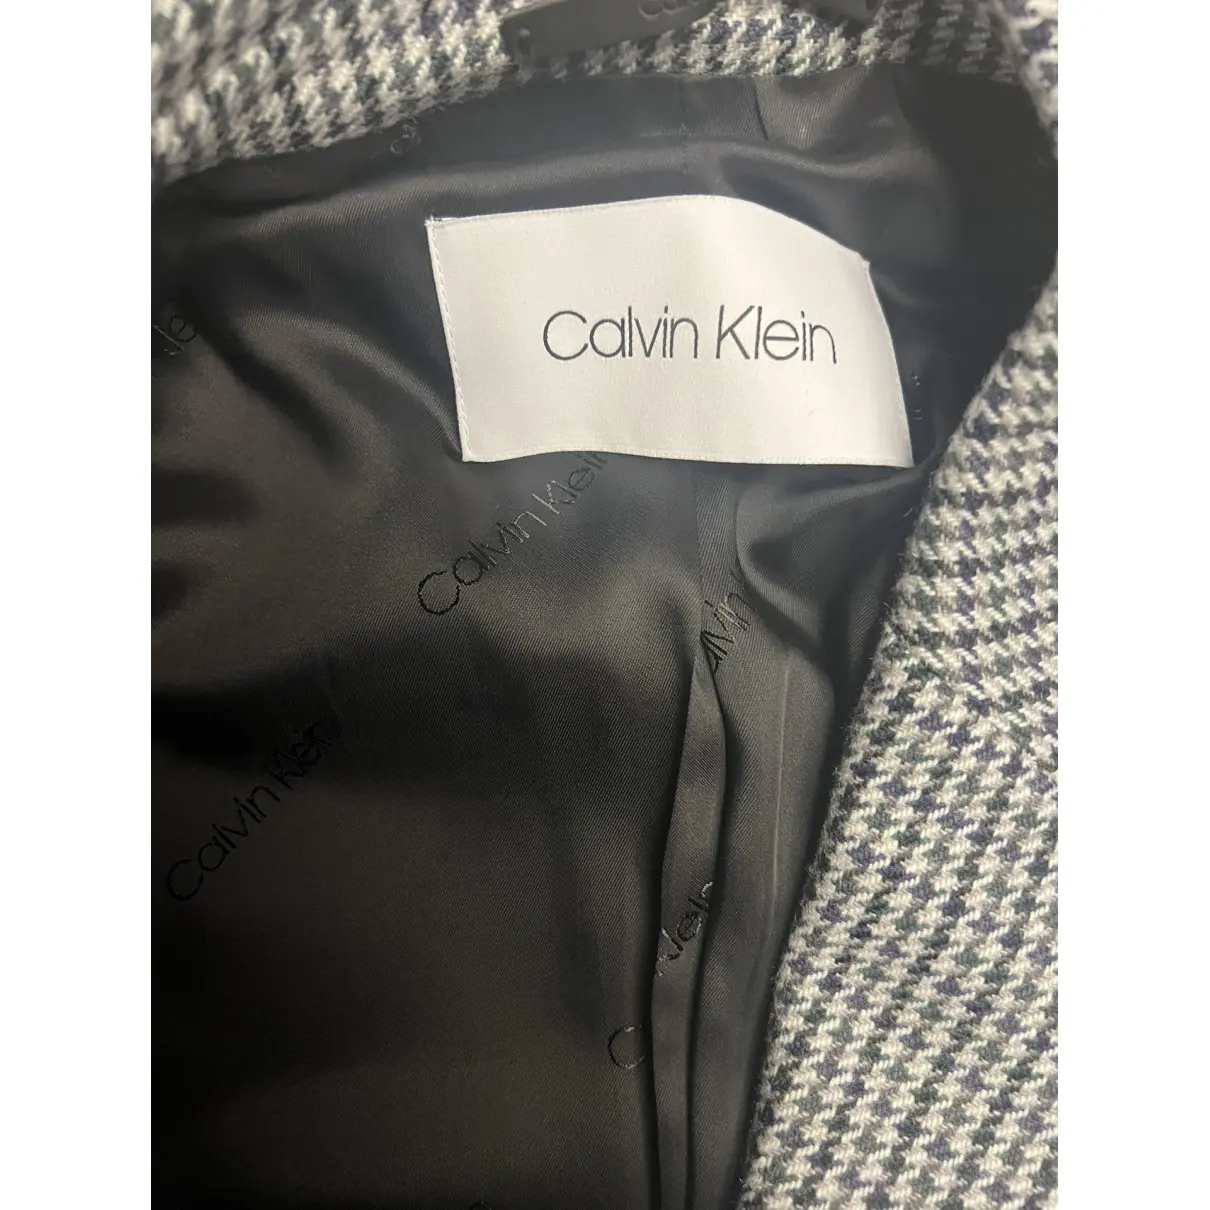 Buy Calvin Klein Coat online